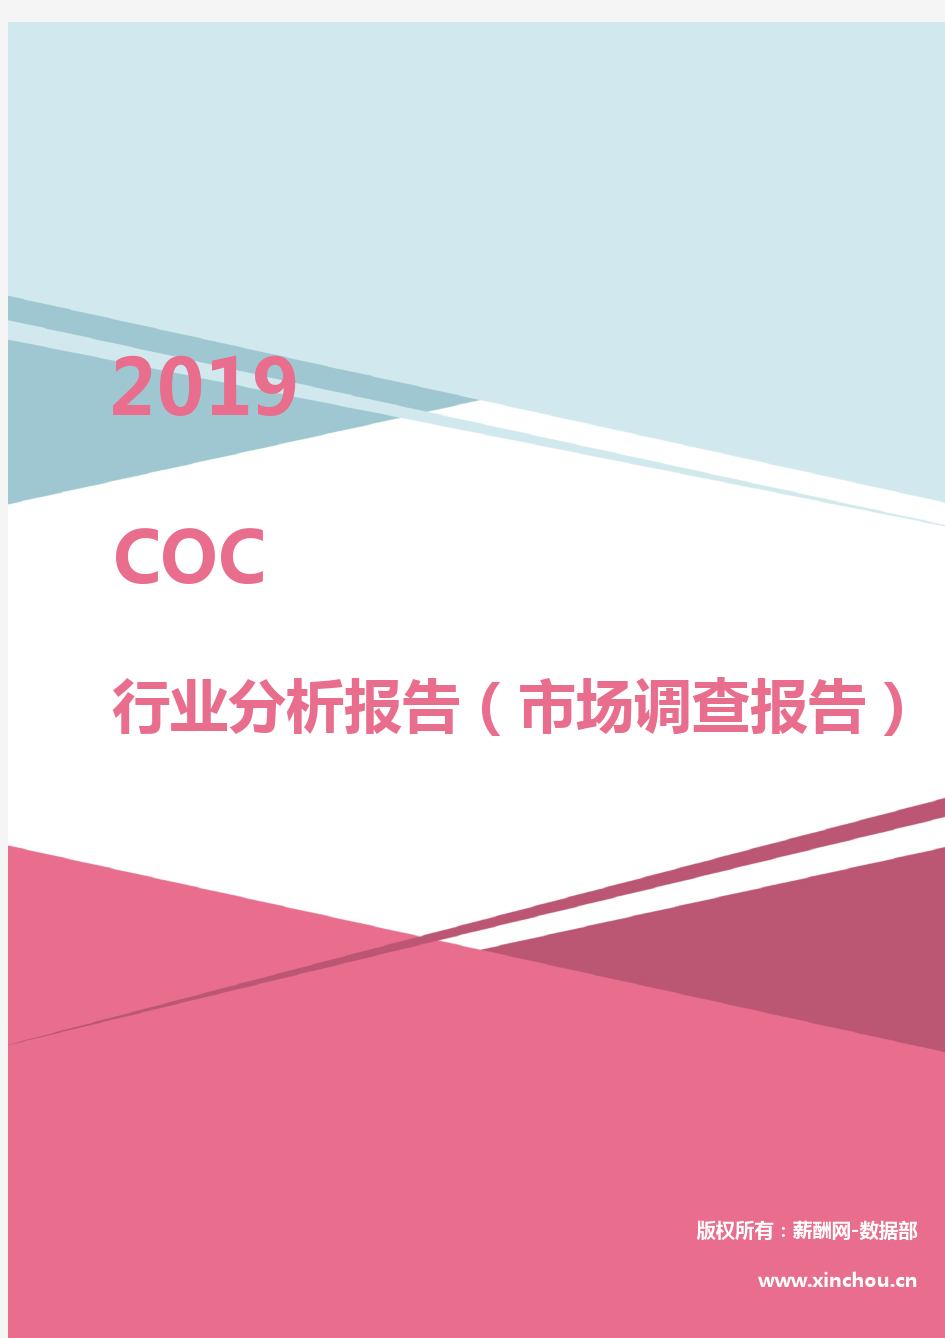 2019年COC行业分析报告(市场调查报告)